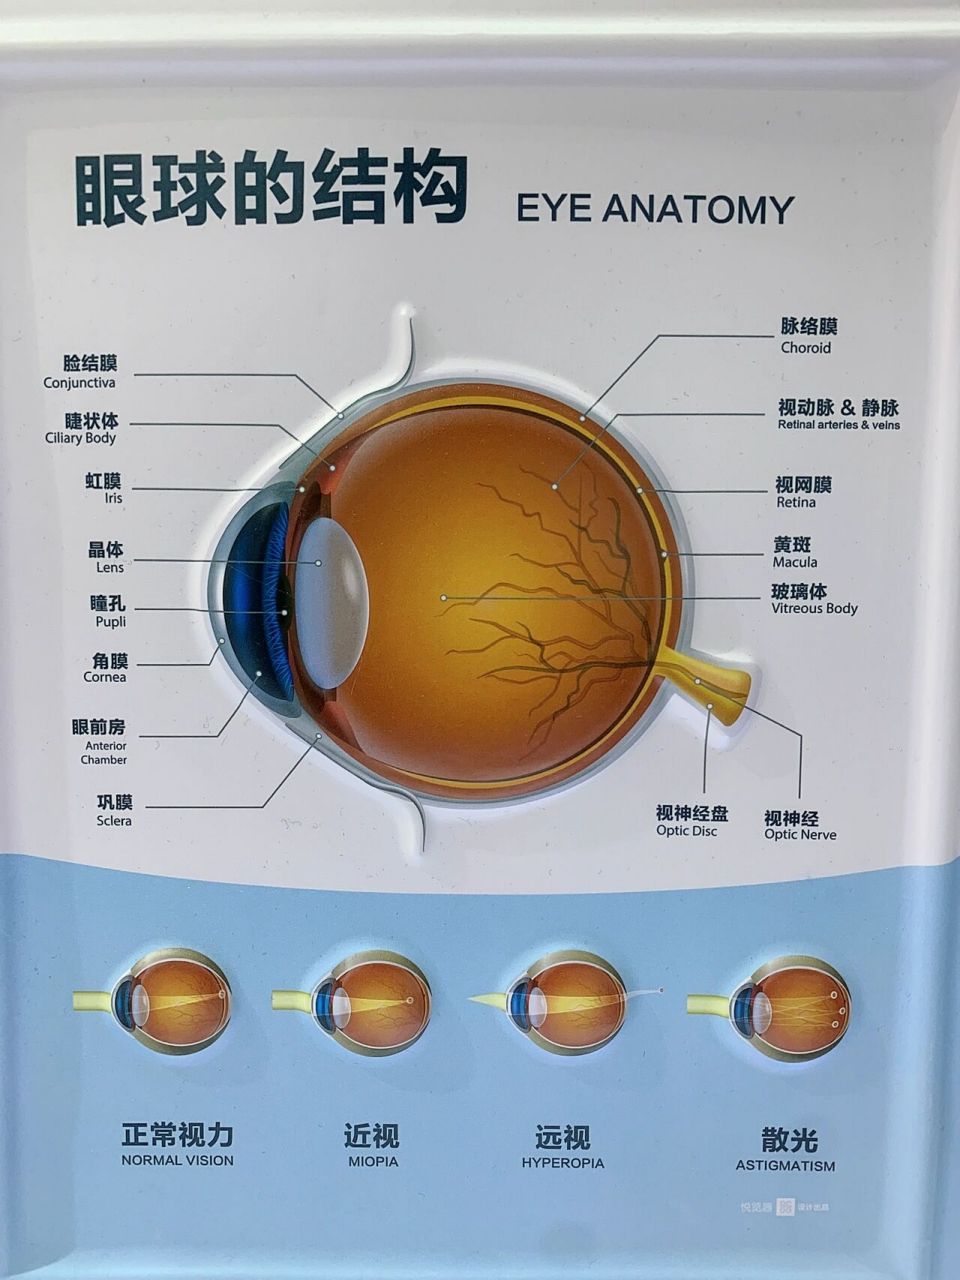 眼球的结构图 眼球是一个视觉器官,保养其健康尤为重要